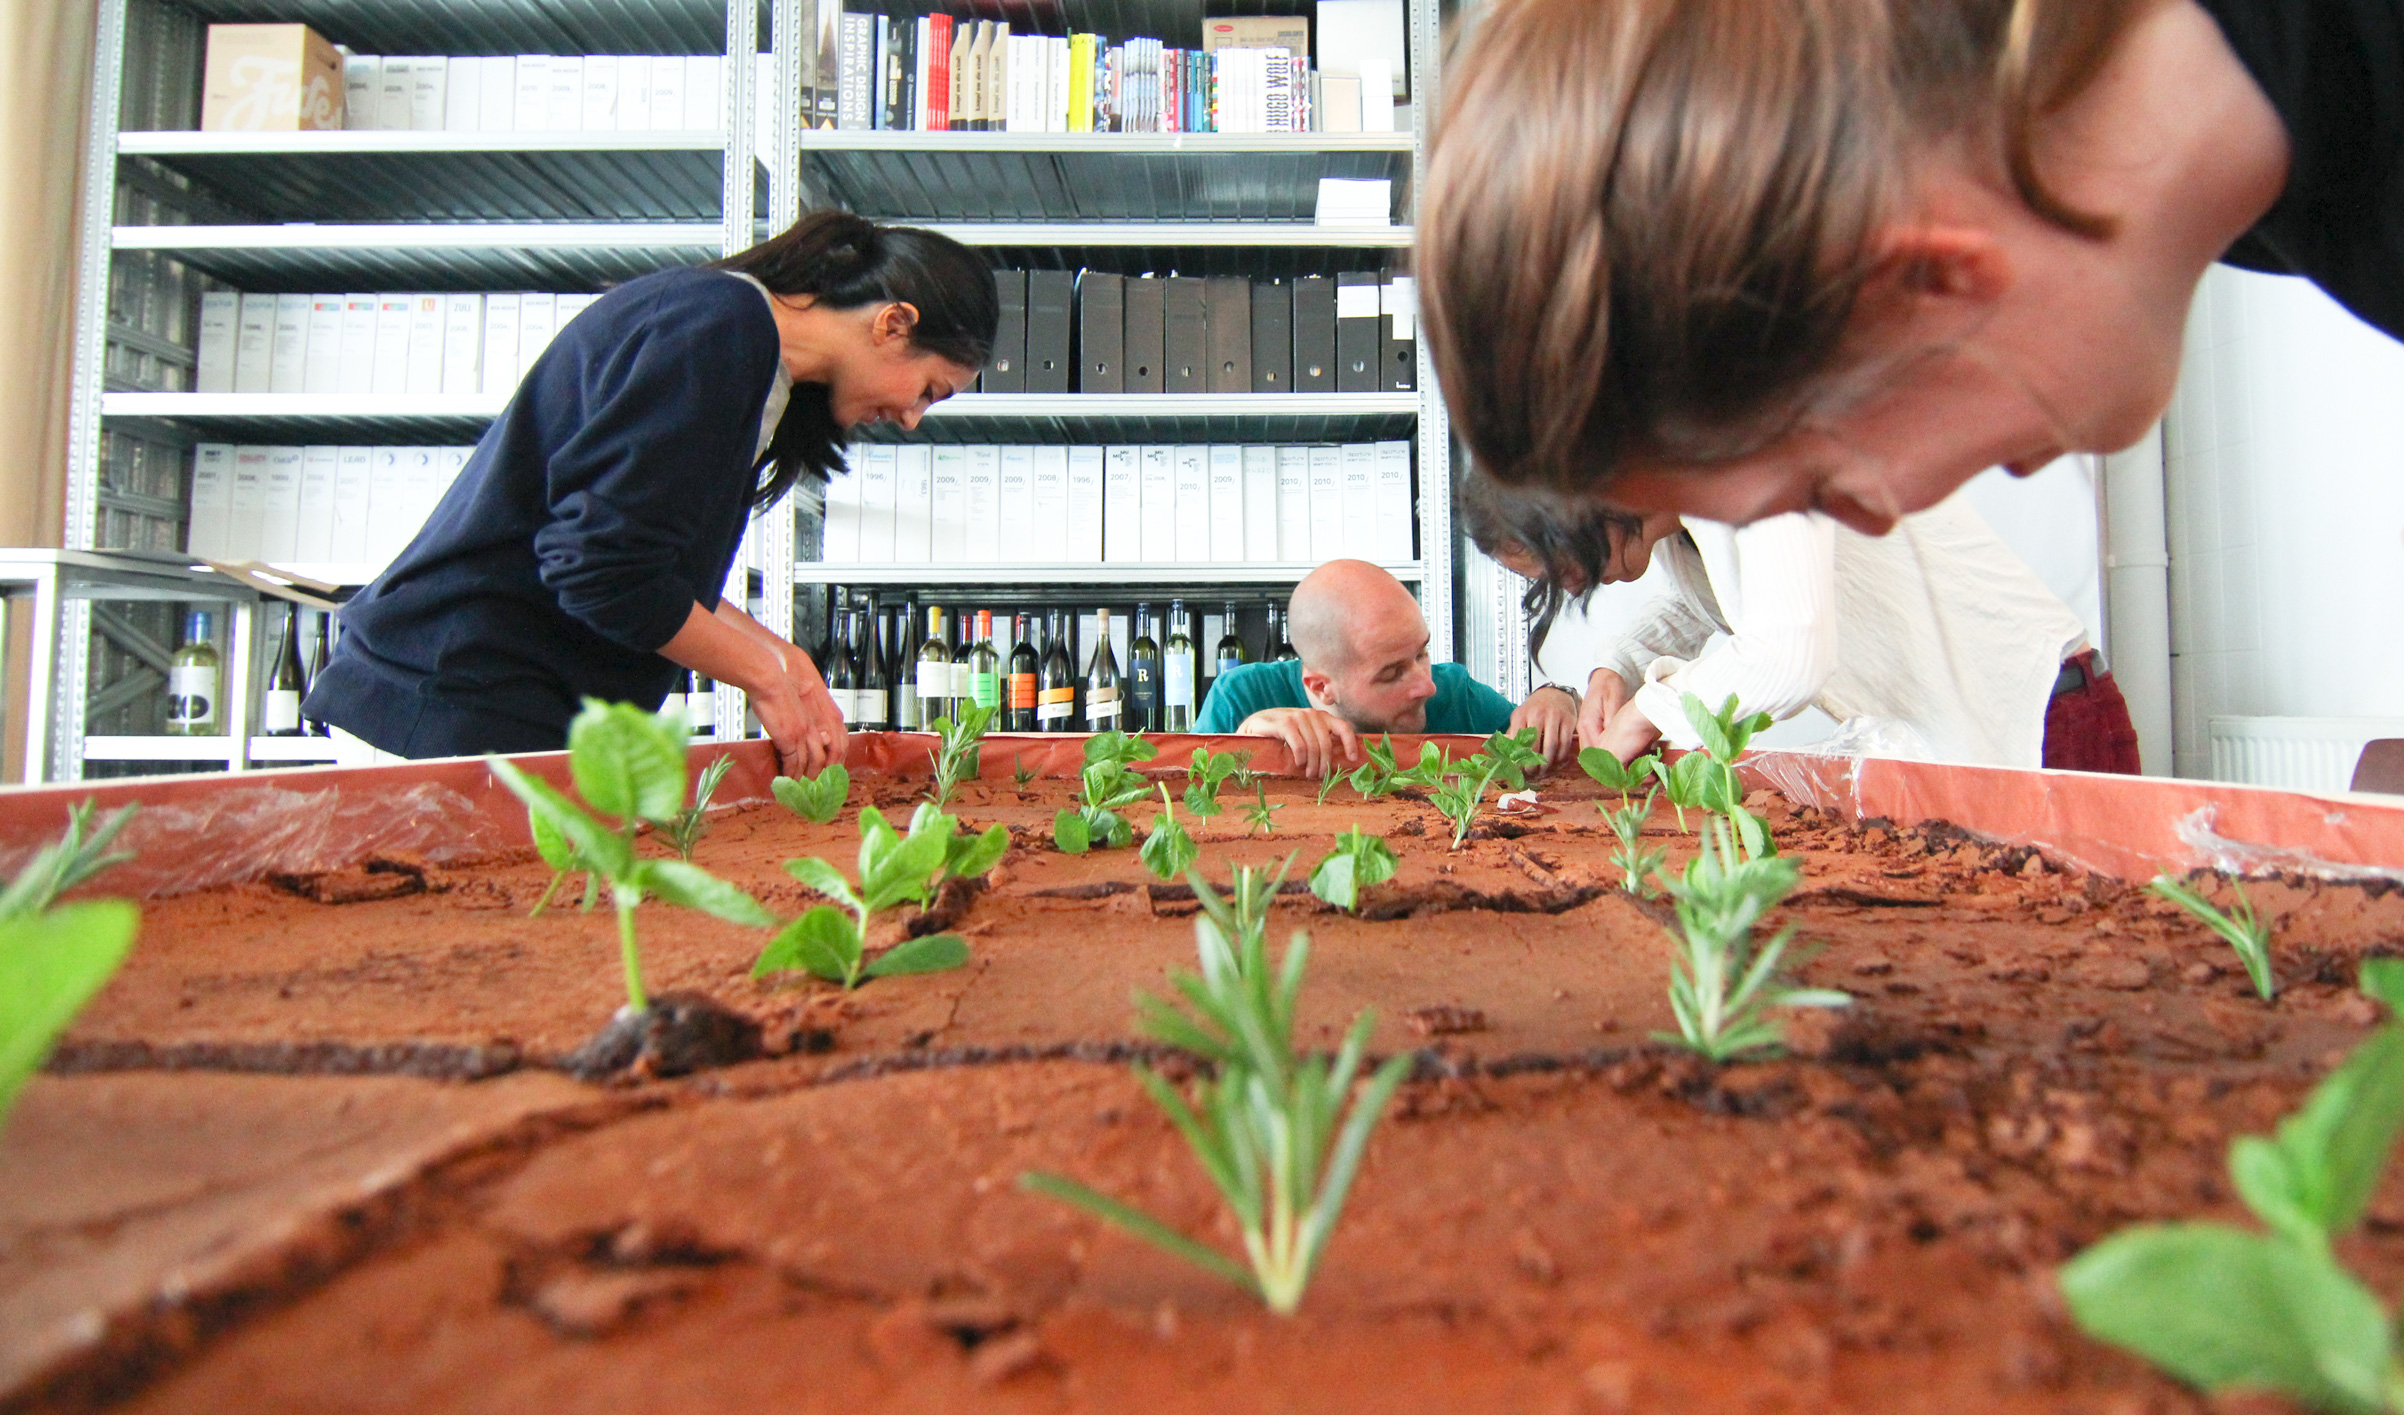 Mitarbeiter:innen des Büro bauen einen Tisch auf, das "Erdfeld" aus Brownies mit Rosmarin der wie Gras in den Fugen wächst